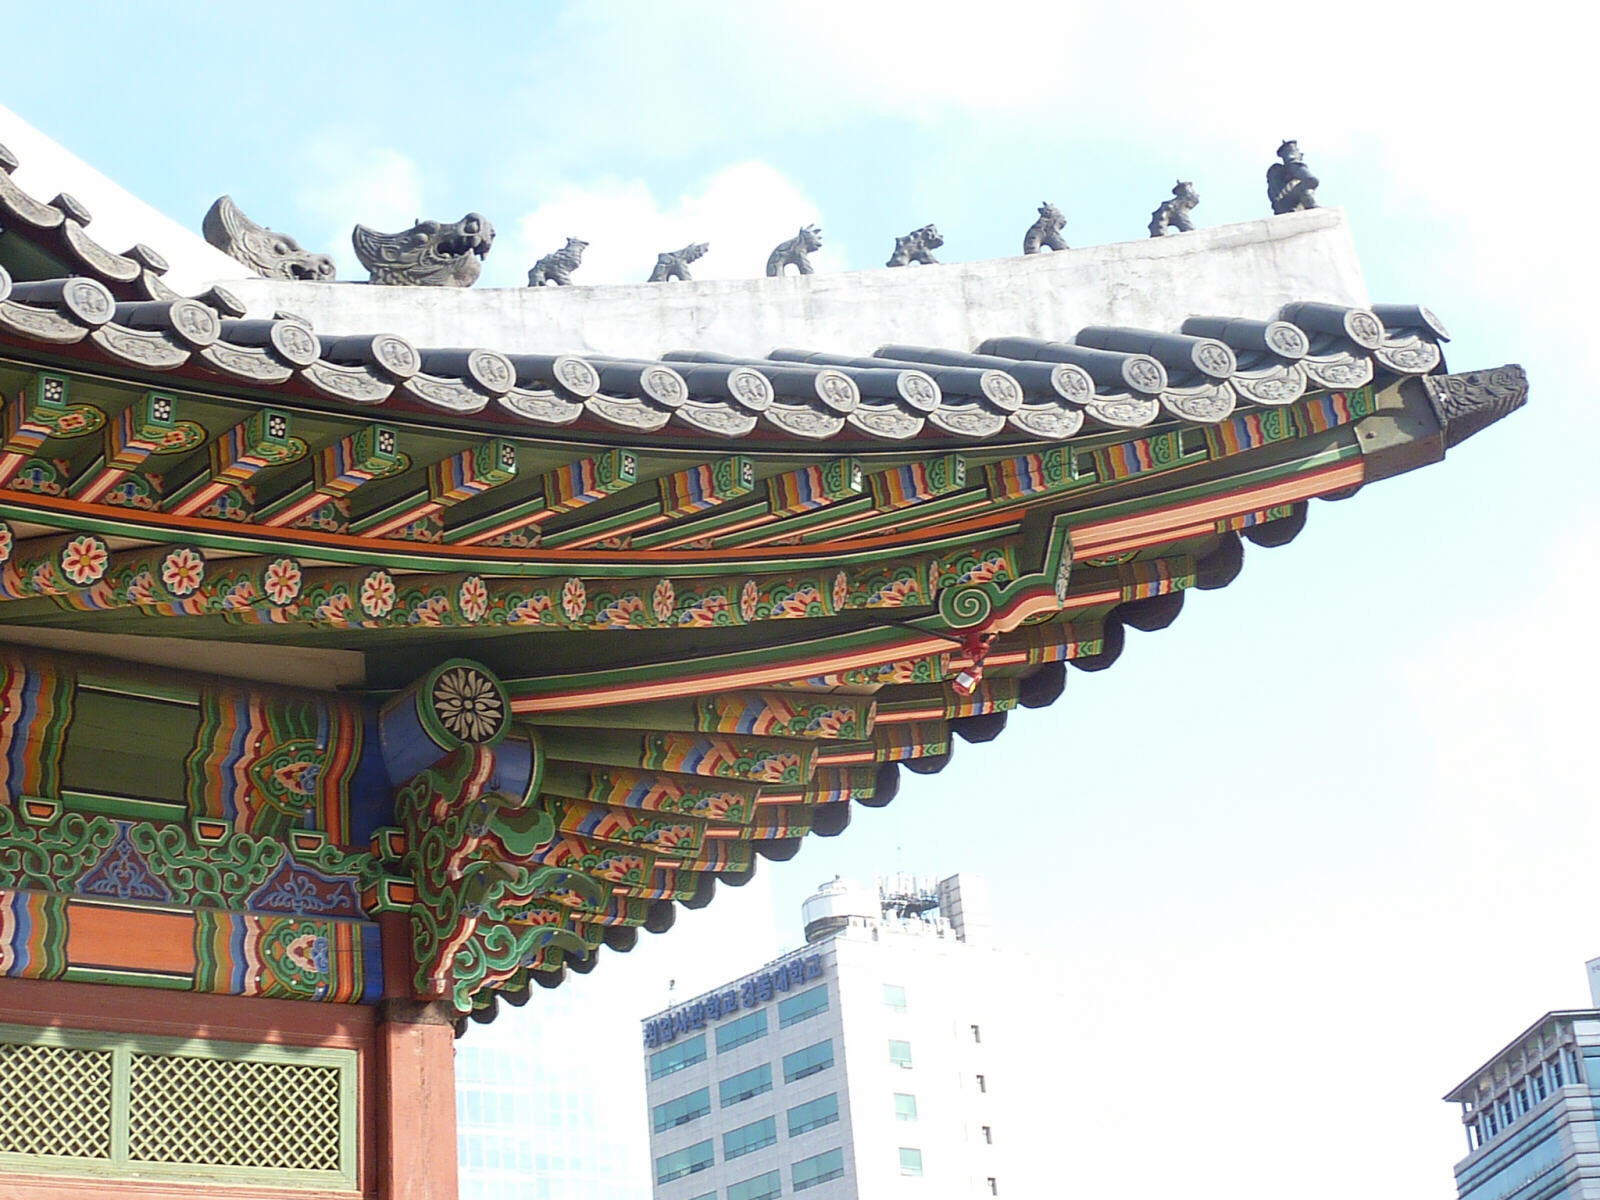 Deoksu Palace in Seoul, South Korea